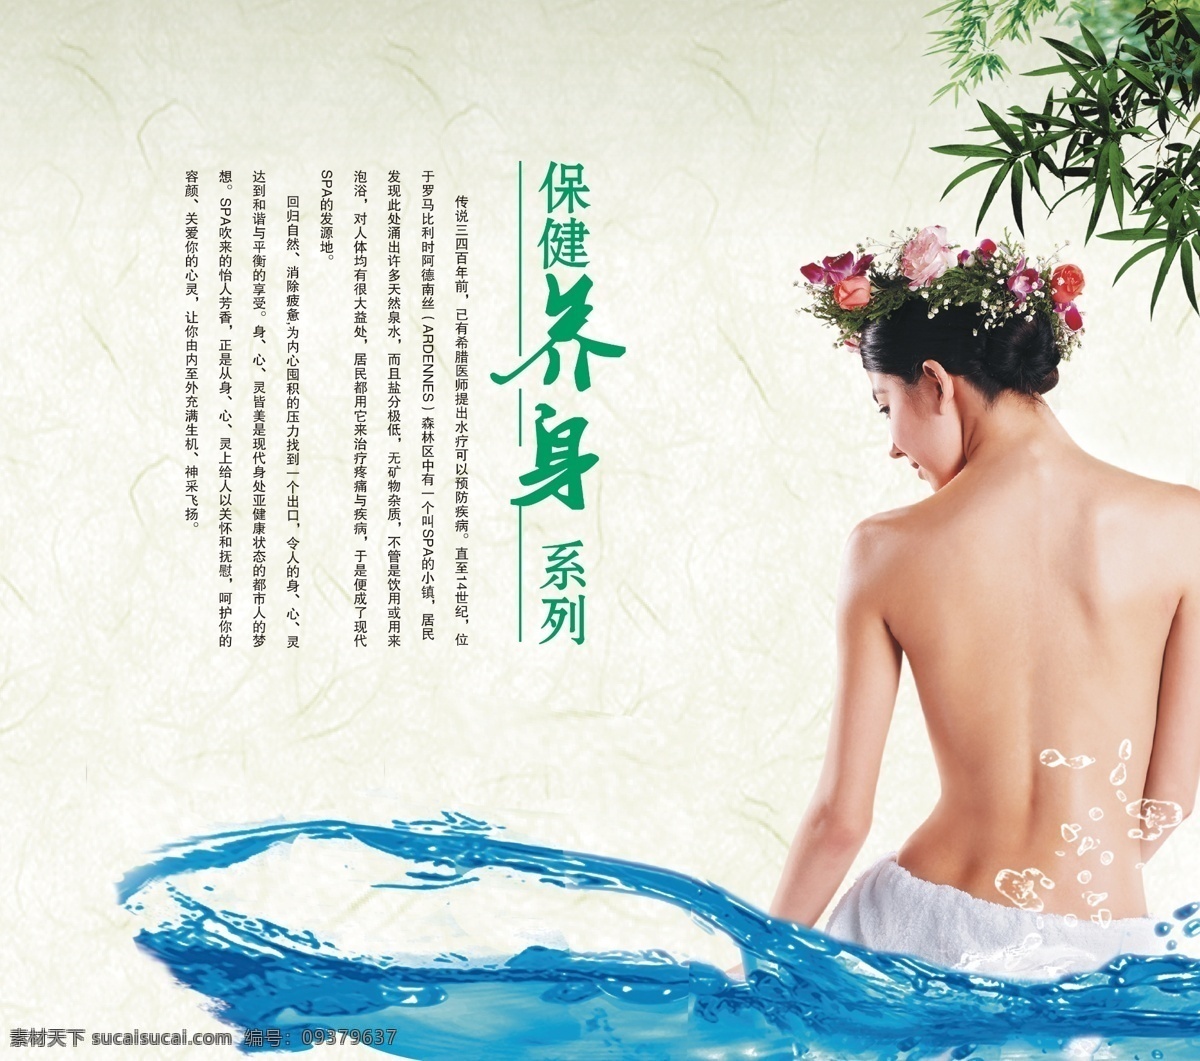 养生保健 养生 美女 裸背 裸女 spa 洗浴 背 精油 中国风 psd分层 享受 舒适 侧面 展板模板 广告设计模板 源文件